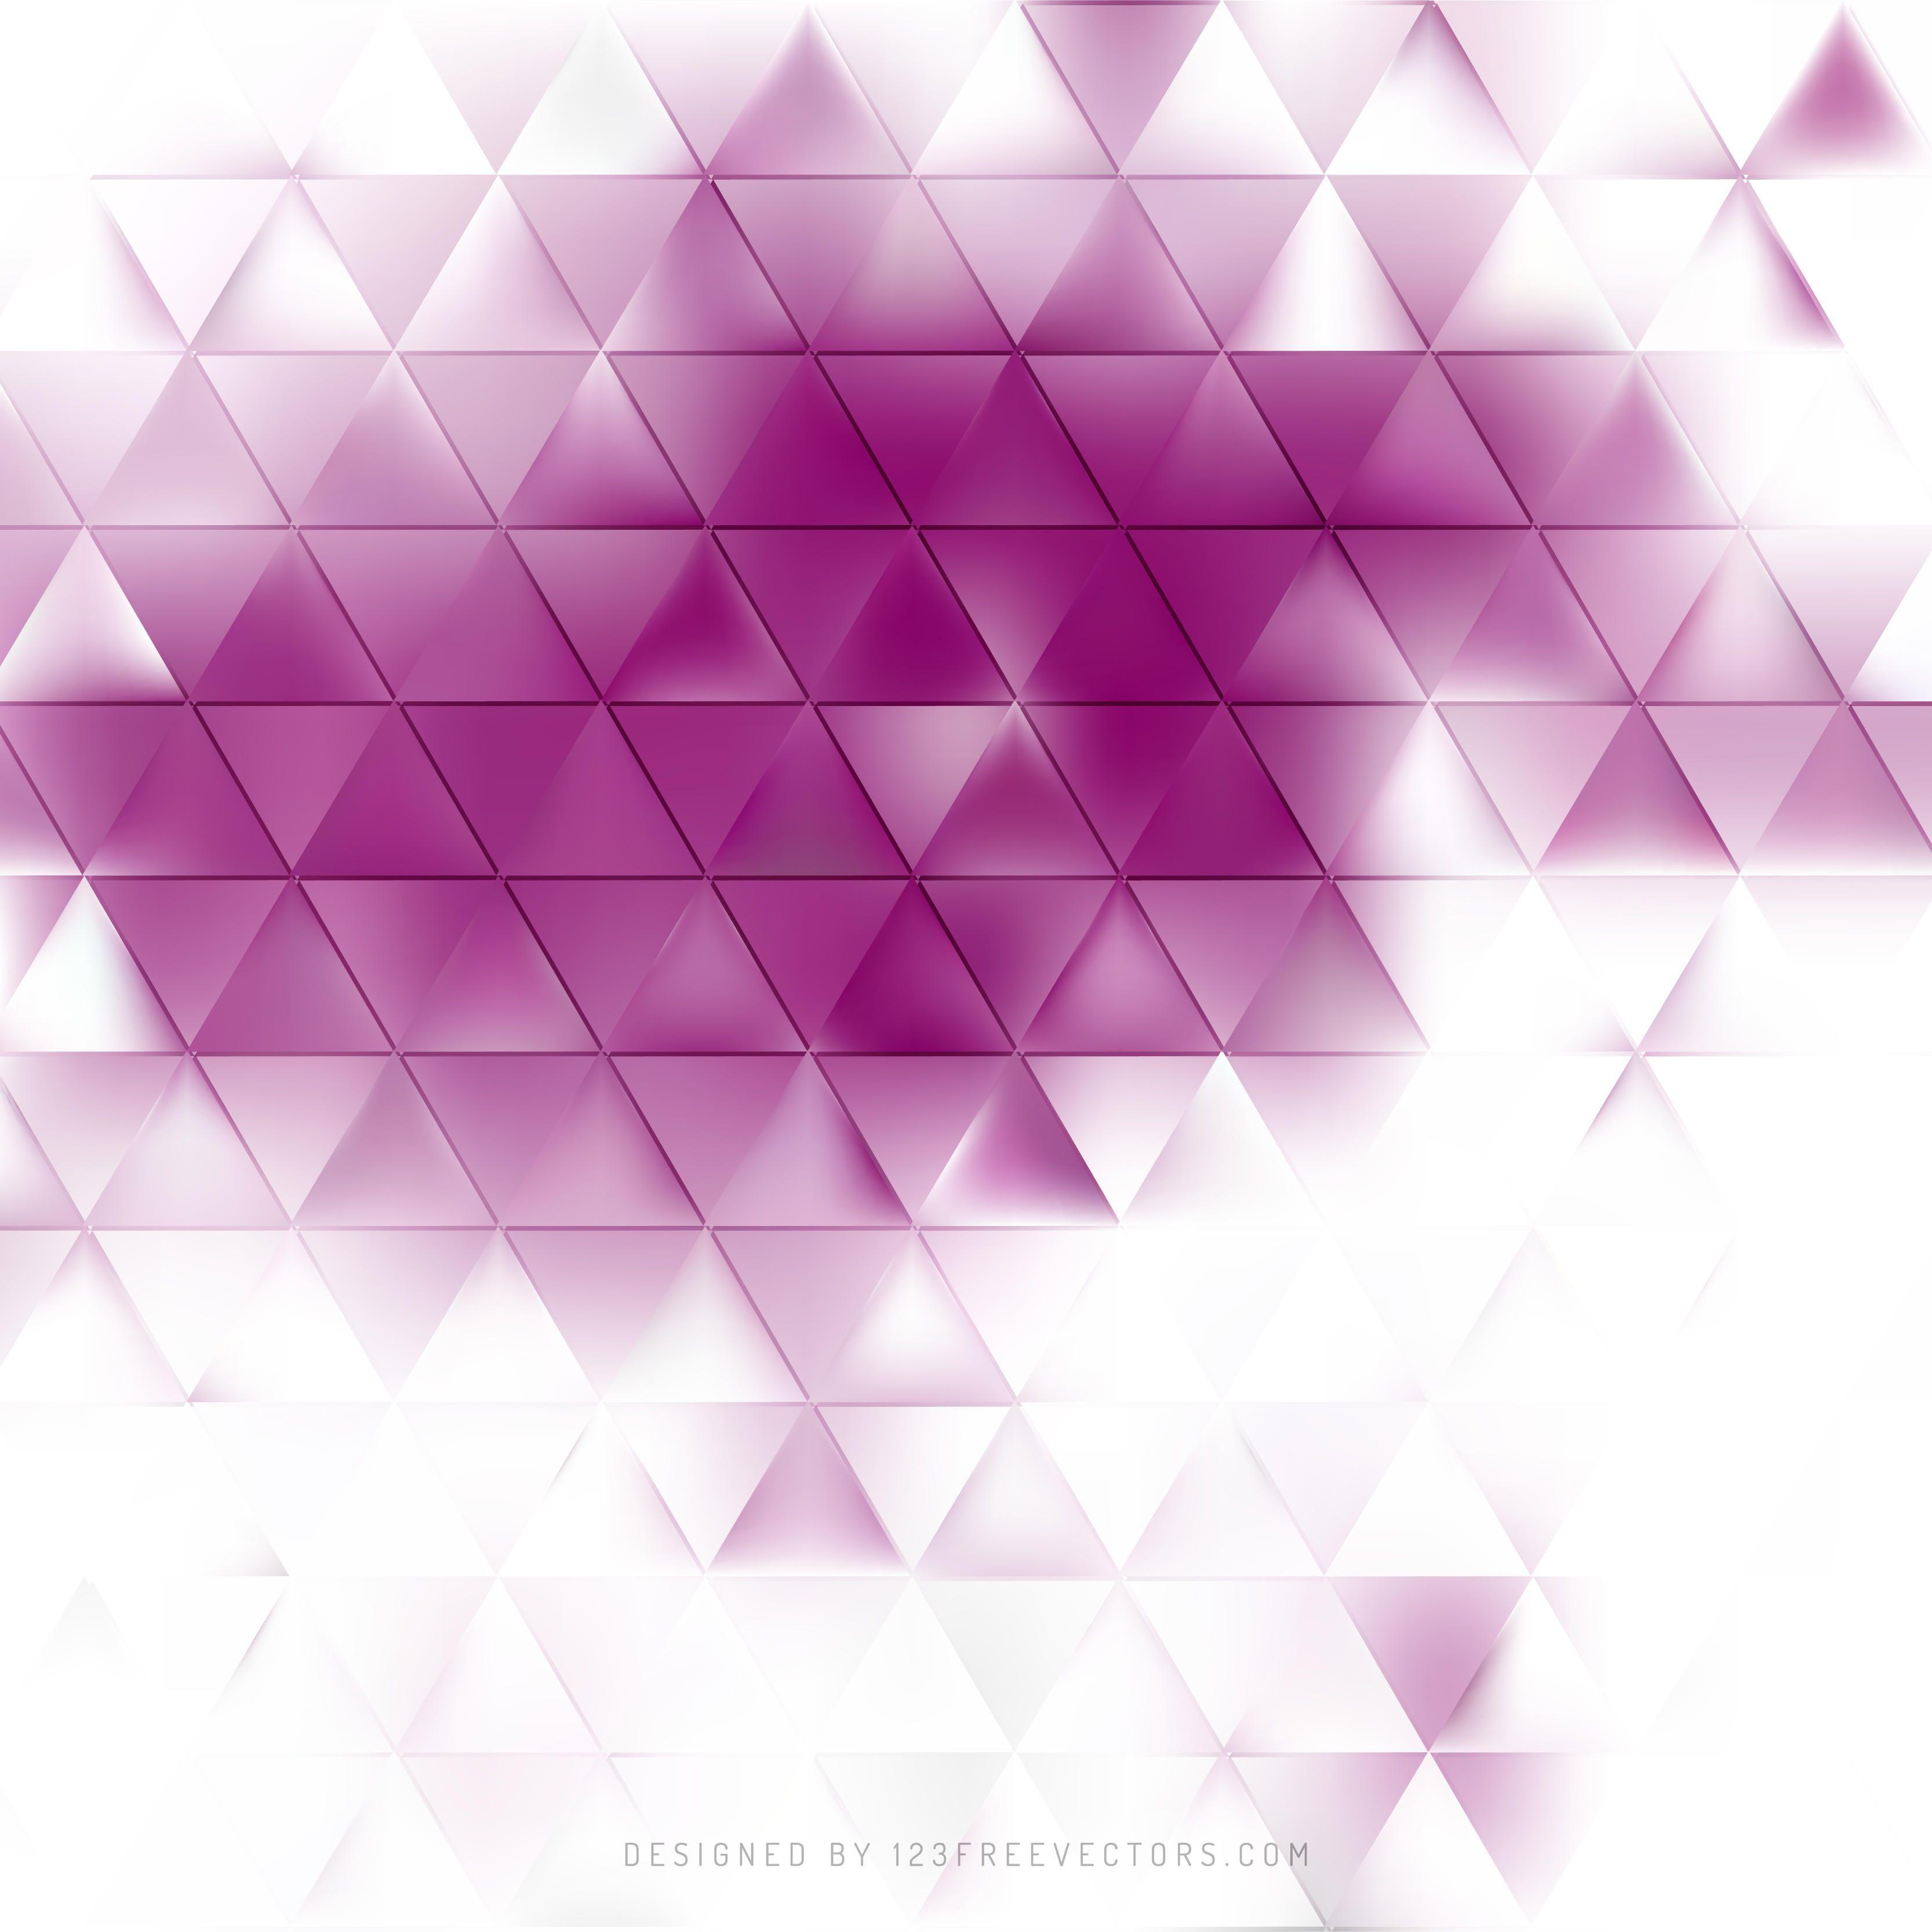 Light Purple Background Vectors. Download Free Vector Art